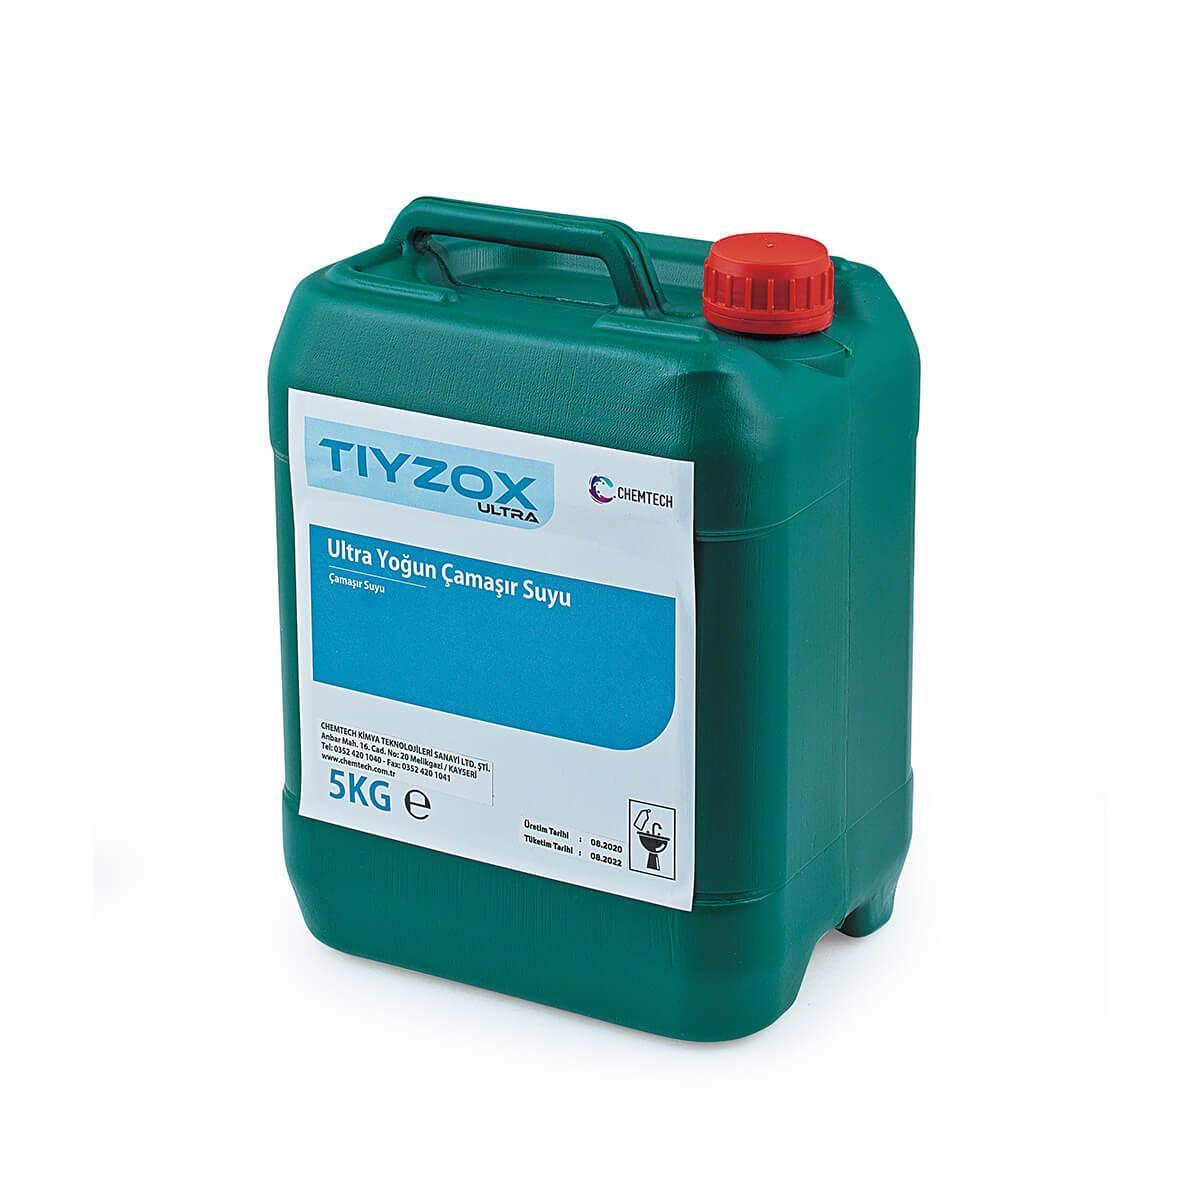 Tiyzox Ultra Ultra Yoğun Çamaşır Suyu CH-6021